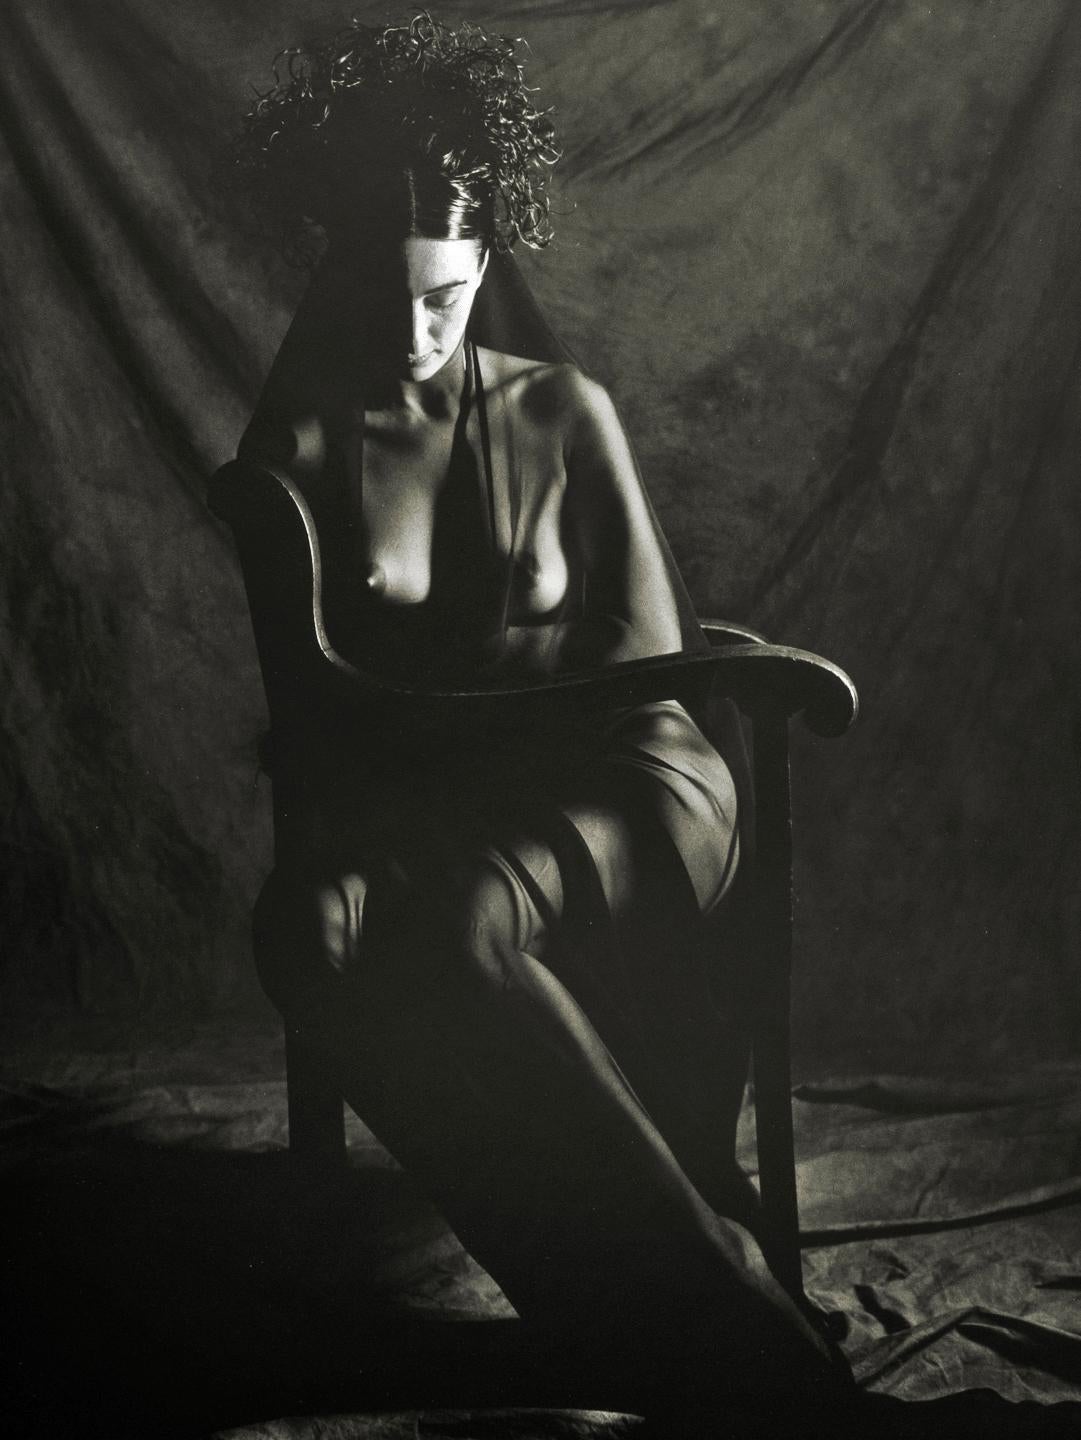 Doug Birkenheuer Black and White Photograph – Somber Frau, 1992 – Nackte weibliche Fotografie, sitzend und geädert, Schwarz-Weiß-Fotografie